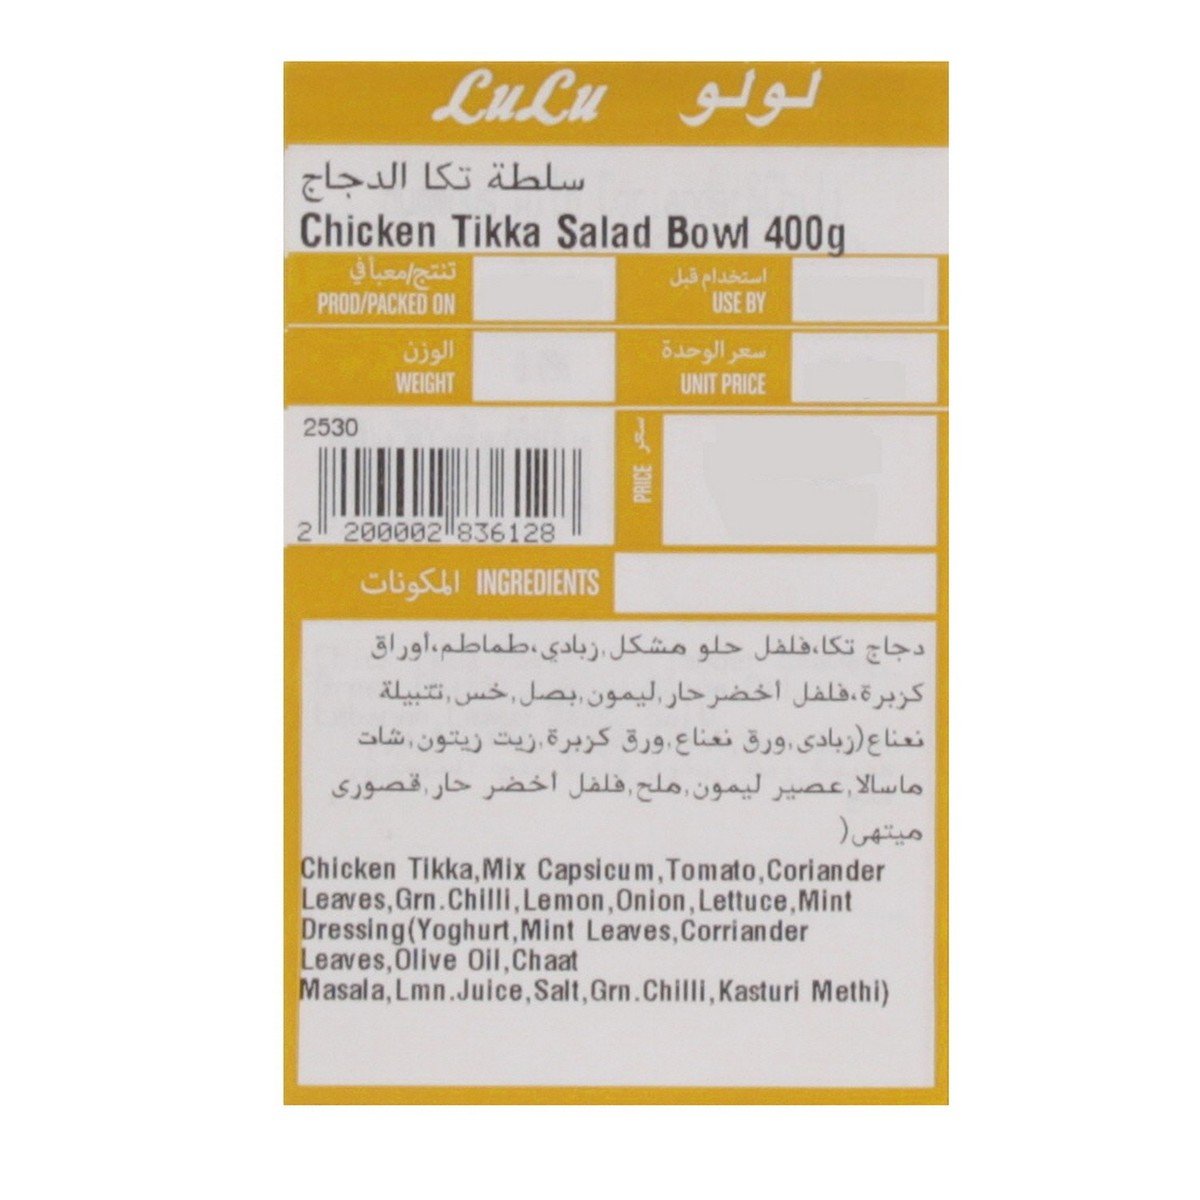 Chicken Tikka Salad Bowl 400g